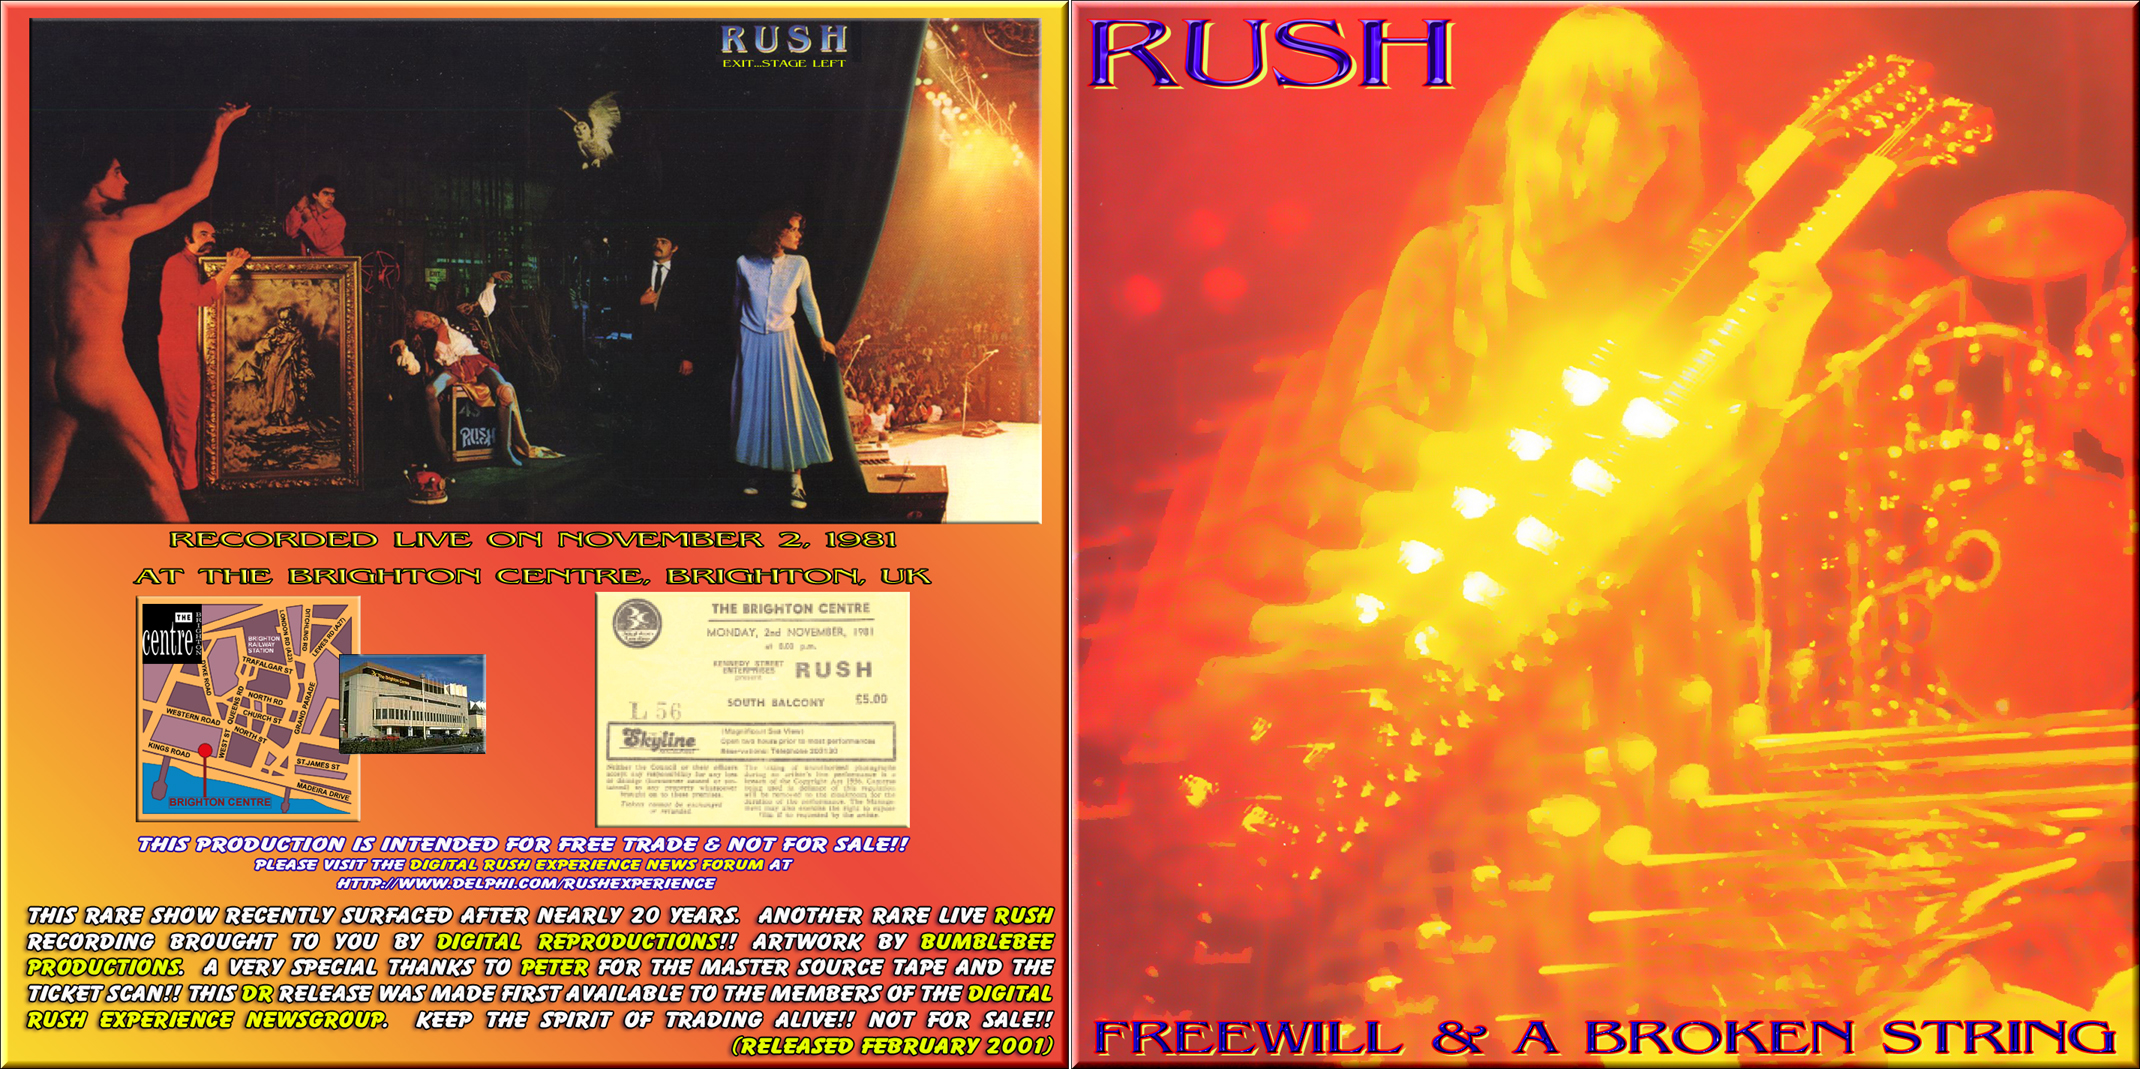 Rush1981-11-02BrightonConferenceCenterUK (2).jpg